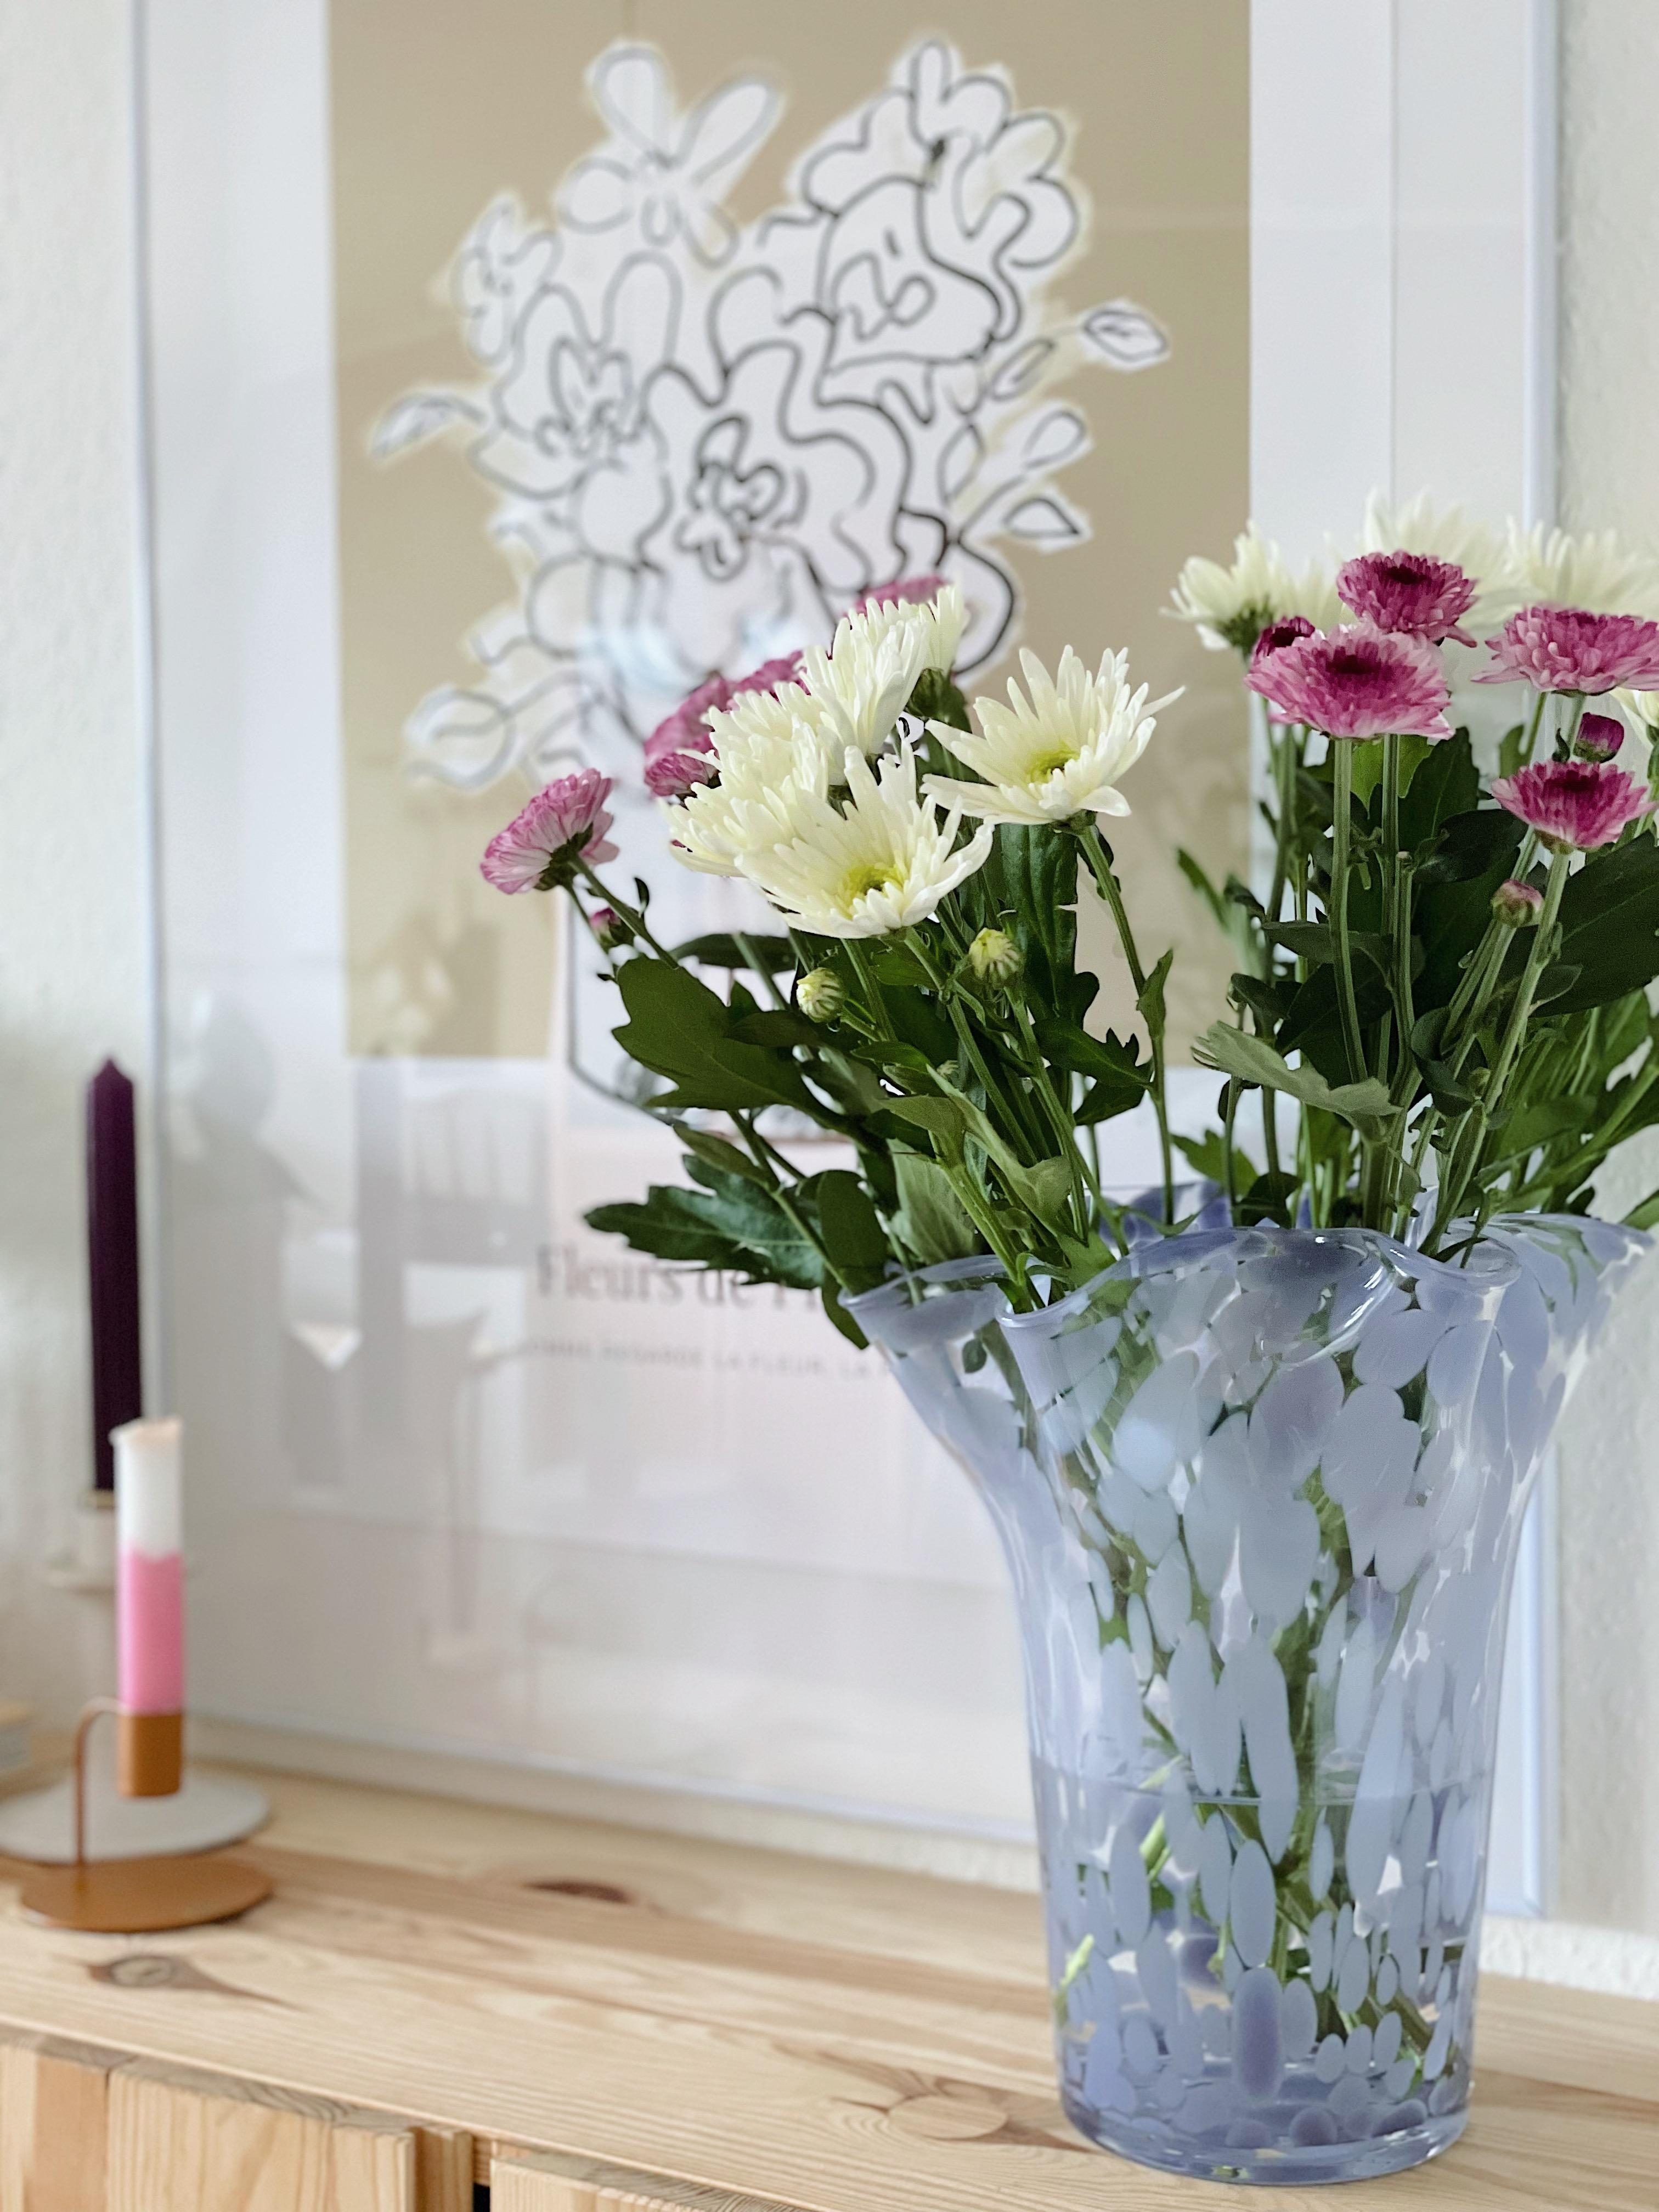 Blumen gehen immer 💐 #frischeblumen #details #wohnzimmer #inspiration #couchliebt 